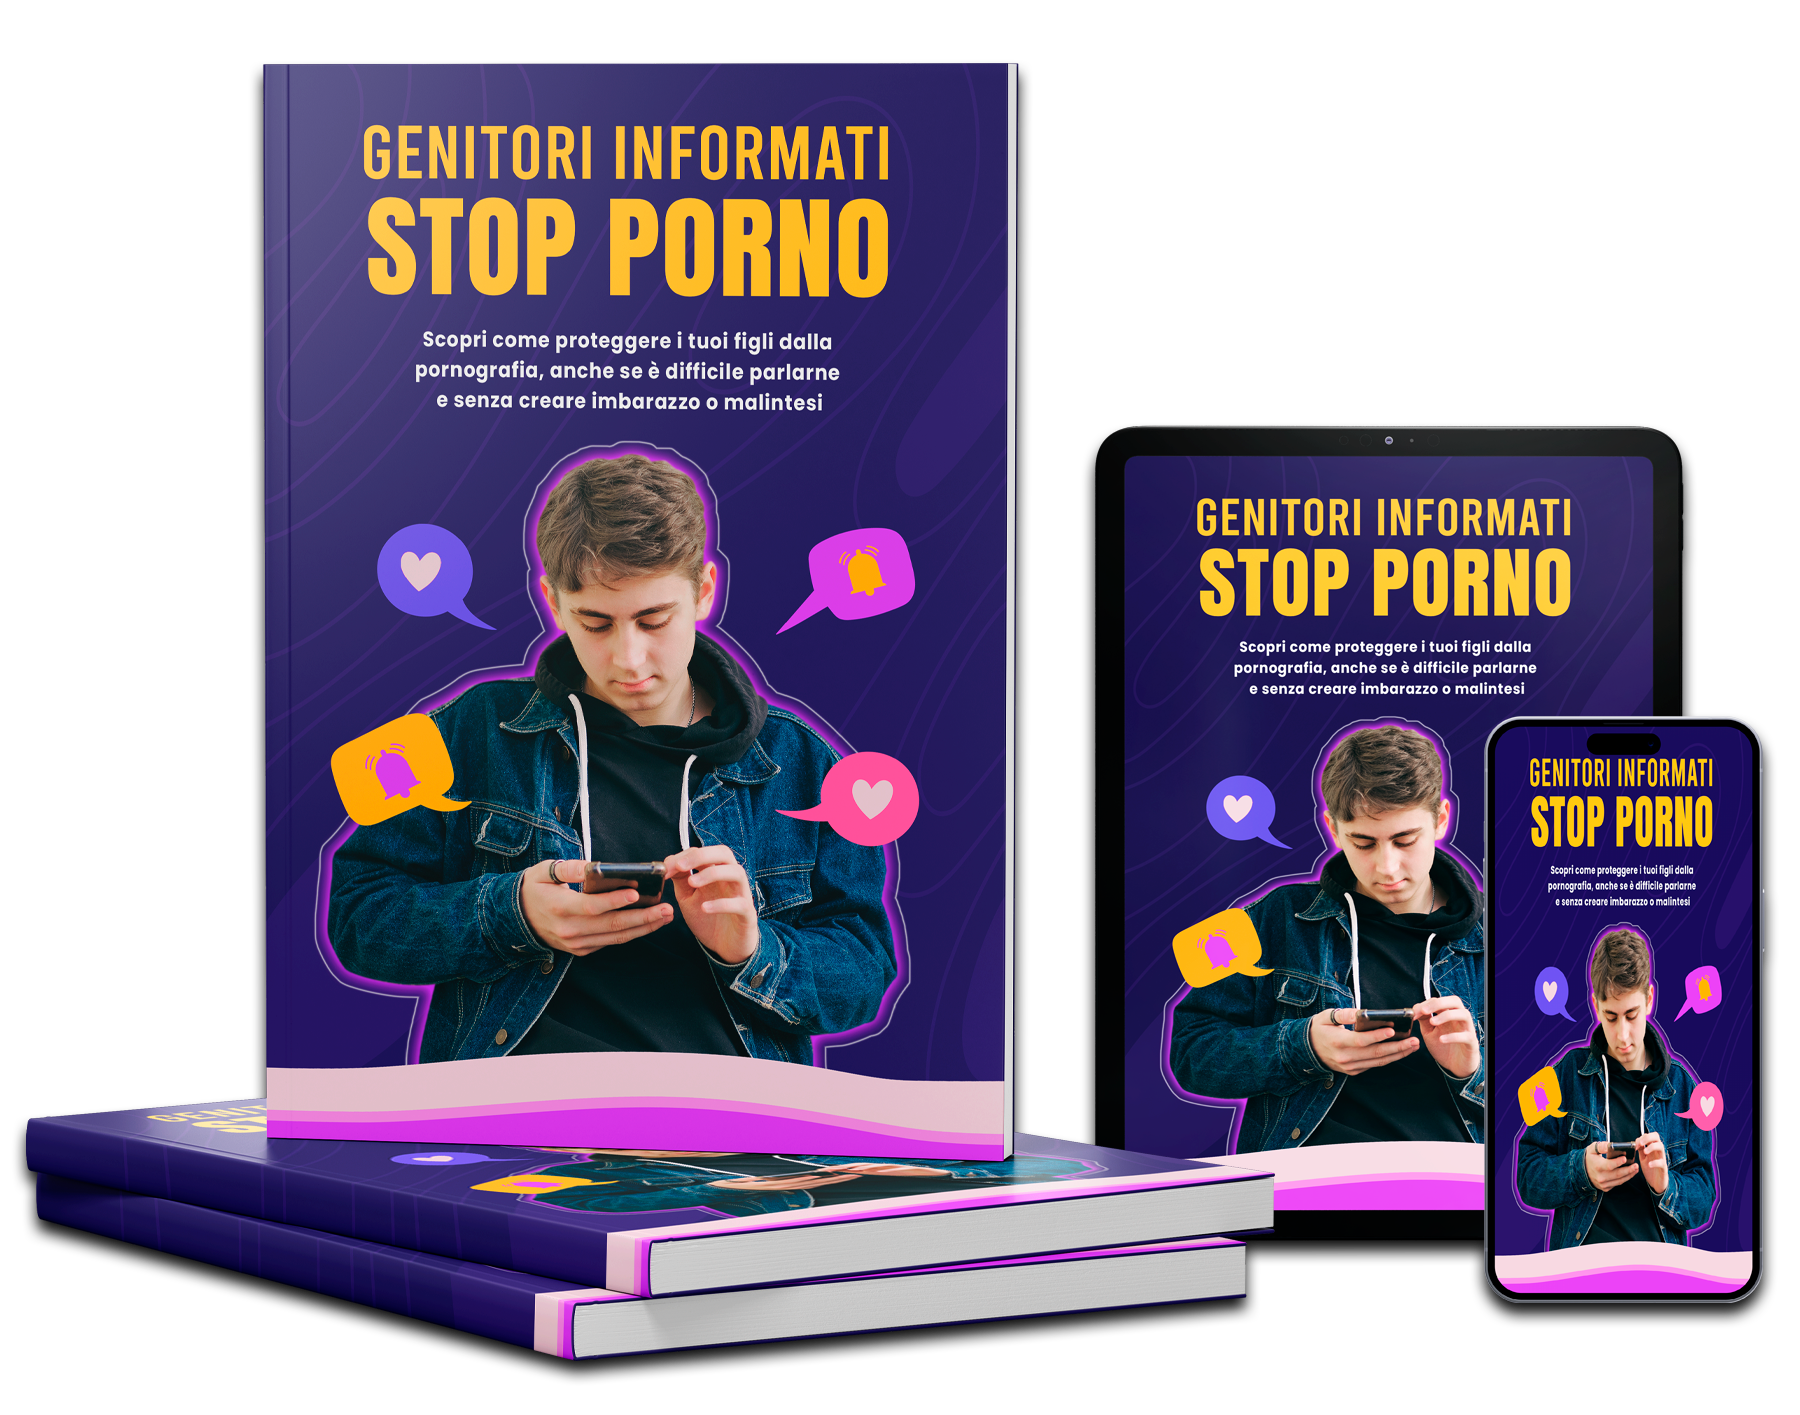 Genitori Informati - Stop Porno